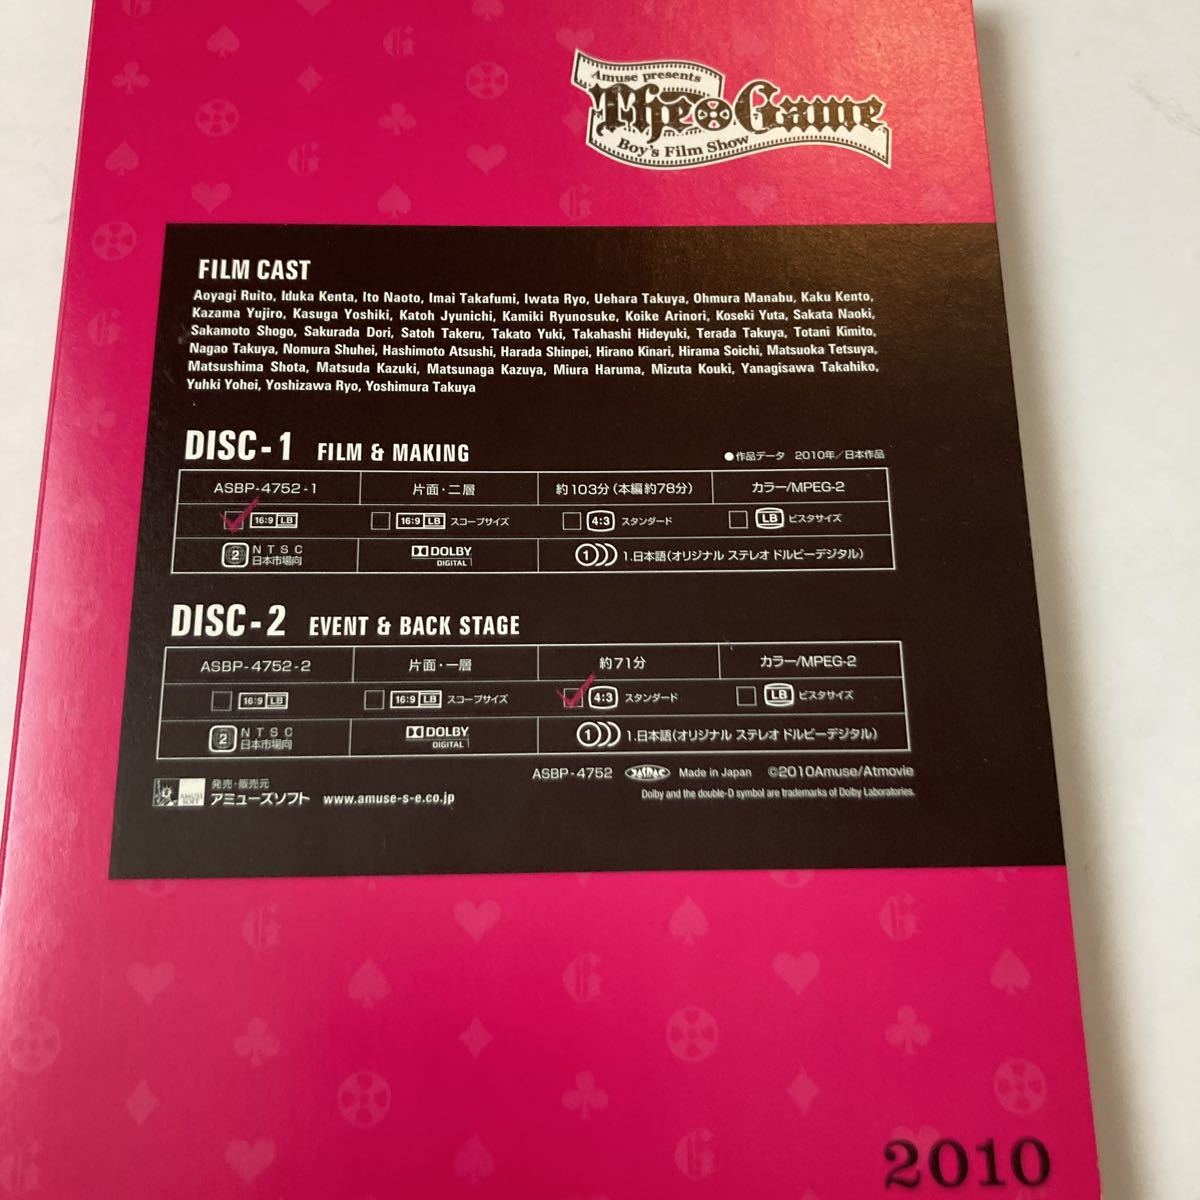 期間限定 Amuse presents The Game Boy's Film Show 2010 佐藤健 ザゲーム2010 DVD 三浦春馬 人気の アミューズ